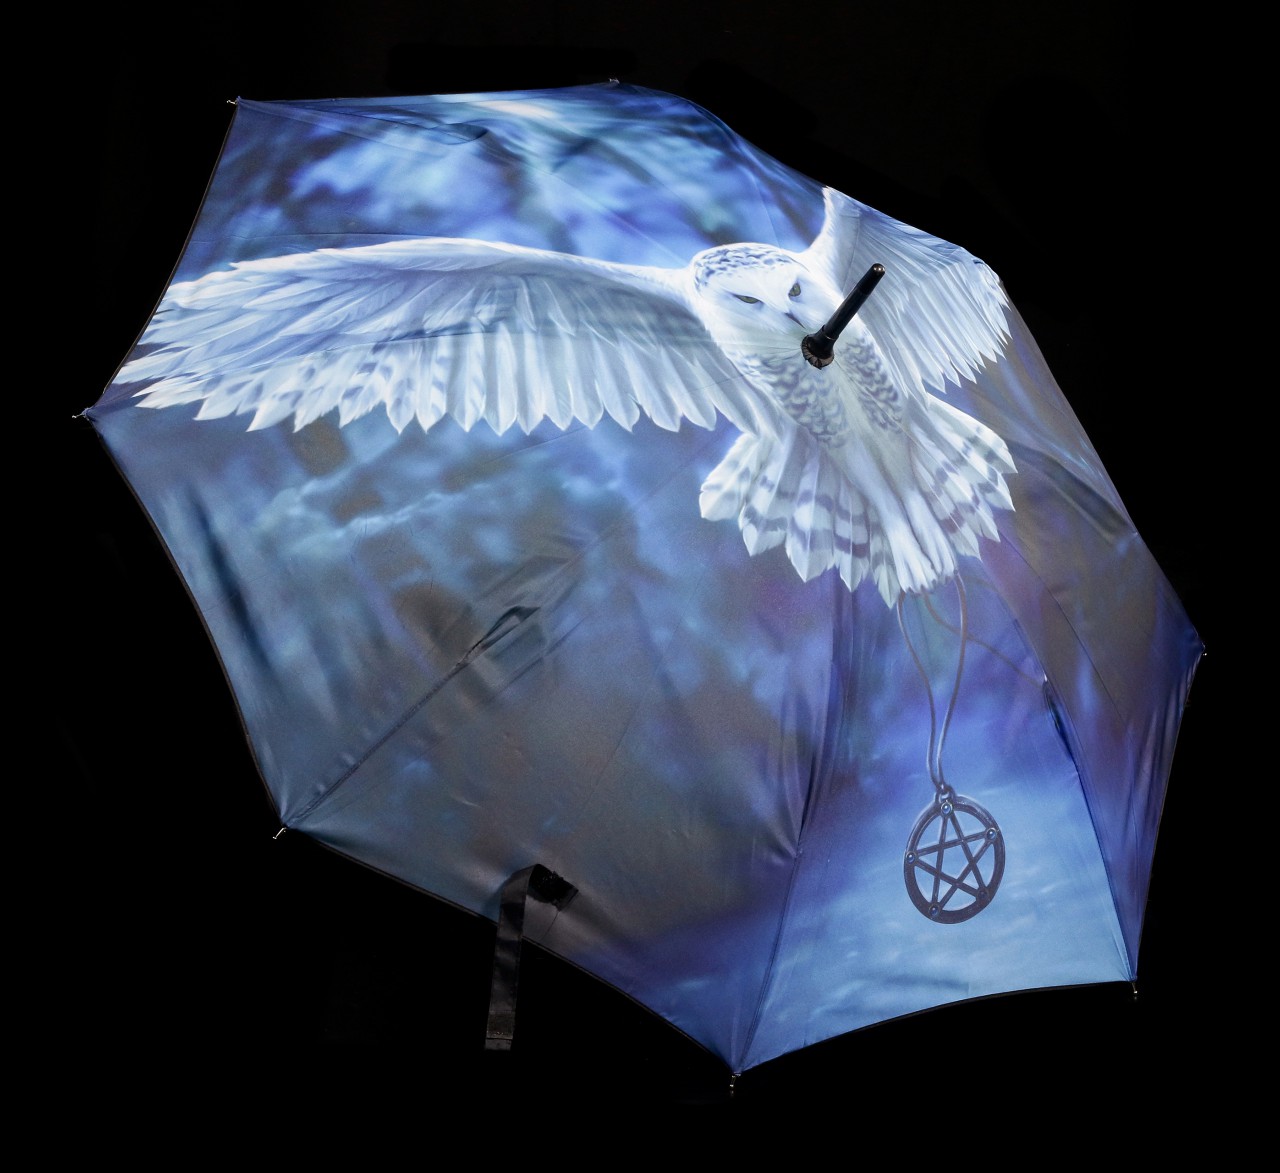 Umbrella with Owl - Awaken your Magic by Anne Stokes